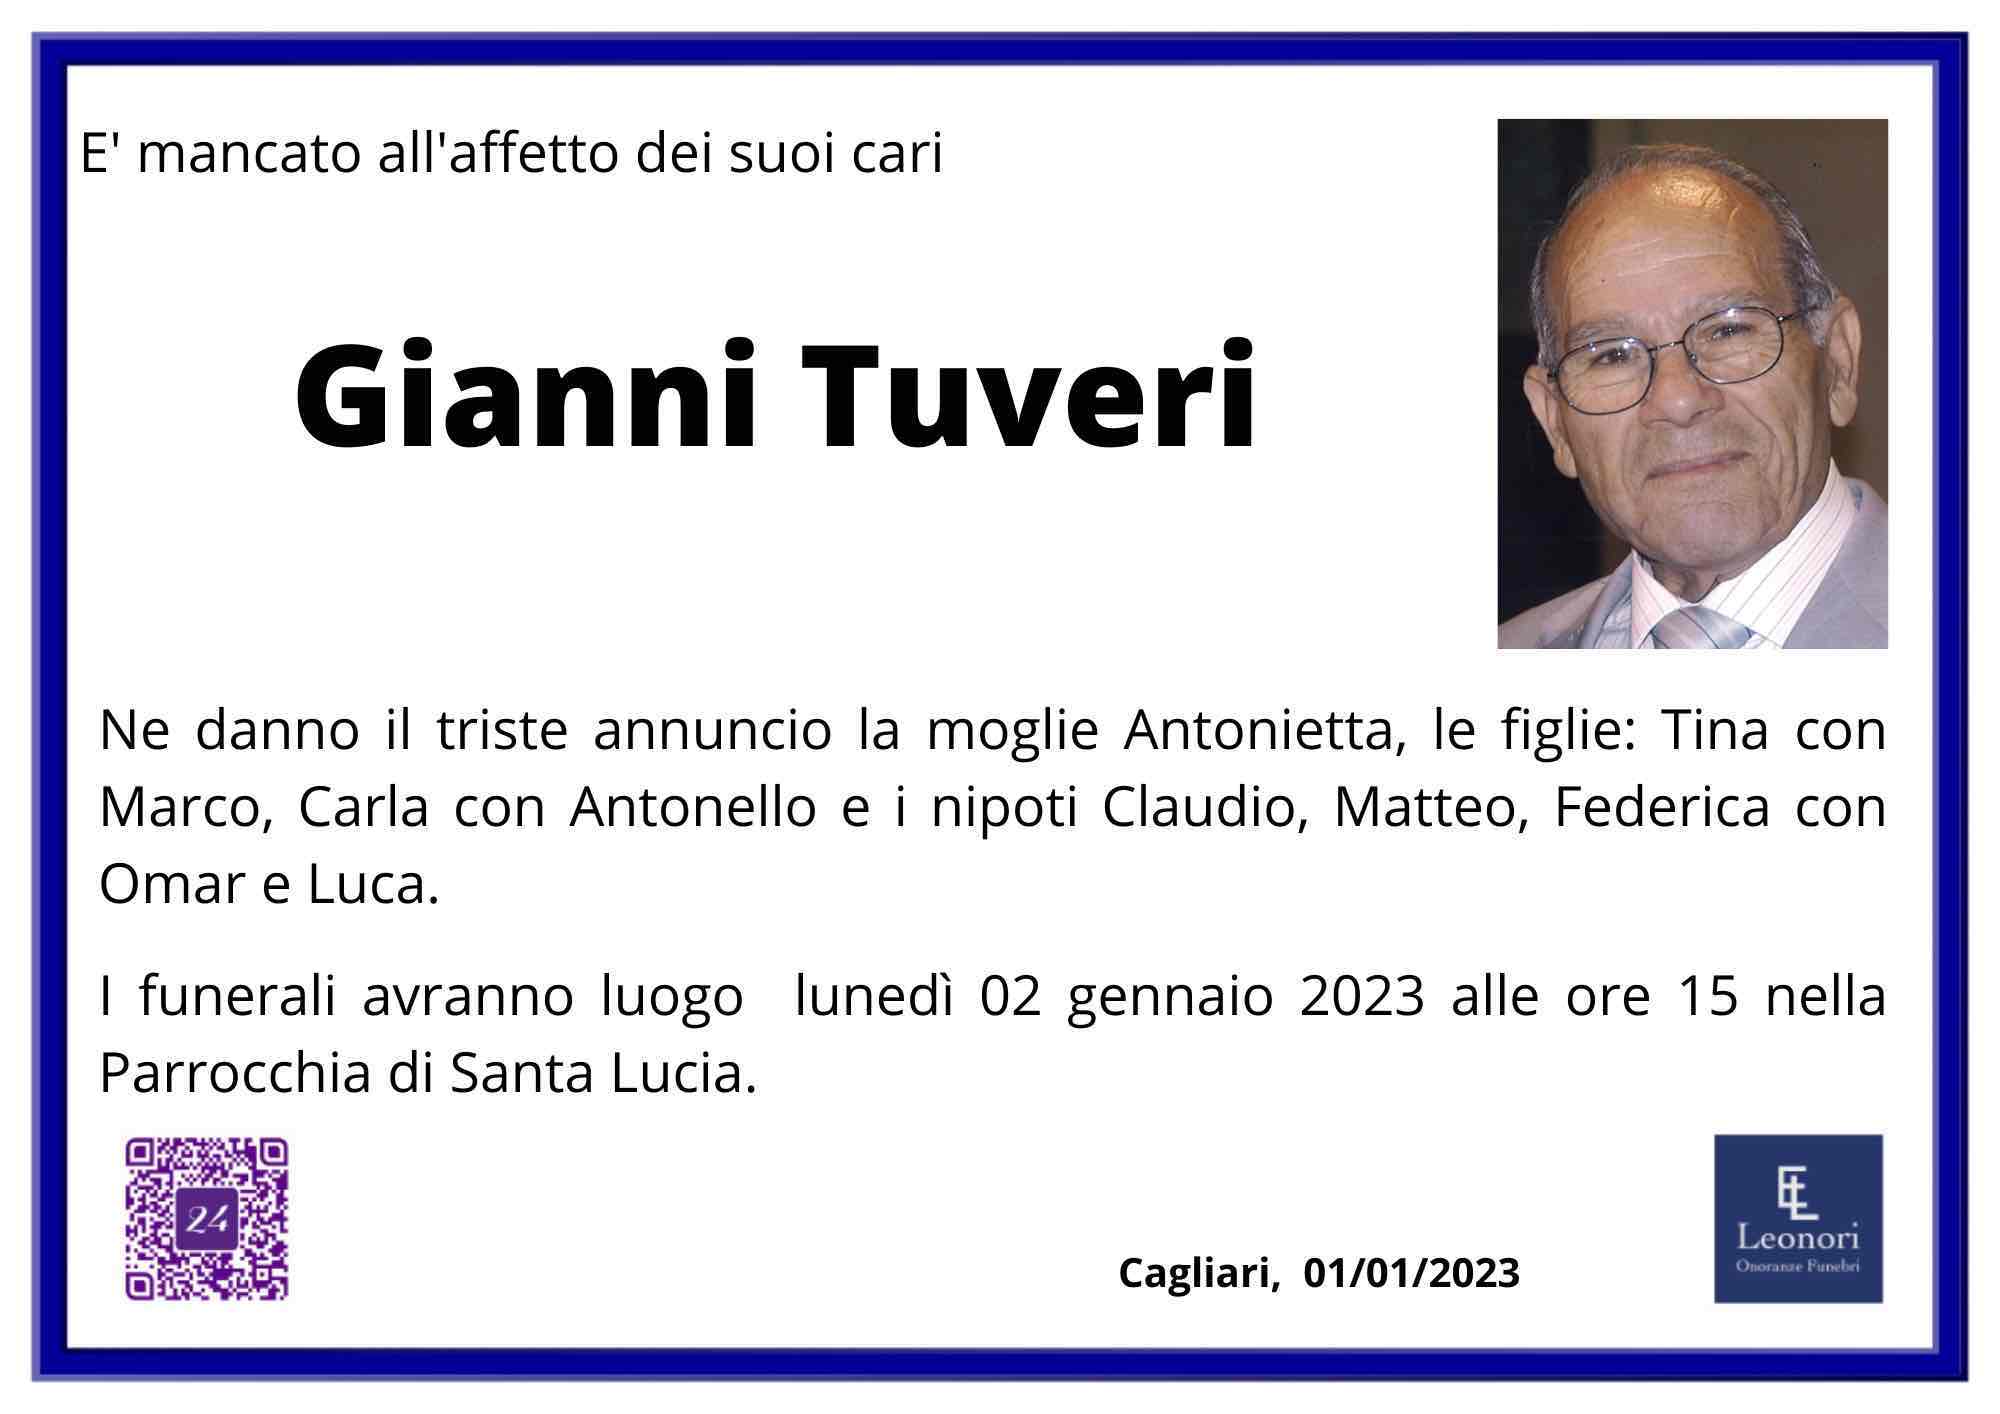 Gianni Tuveri